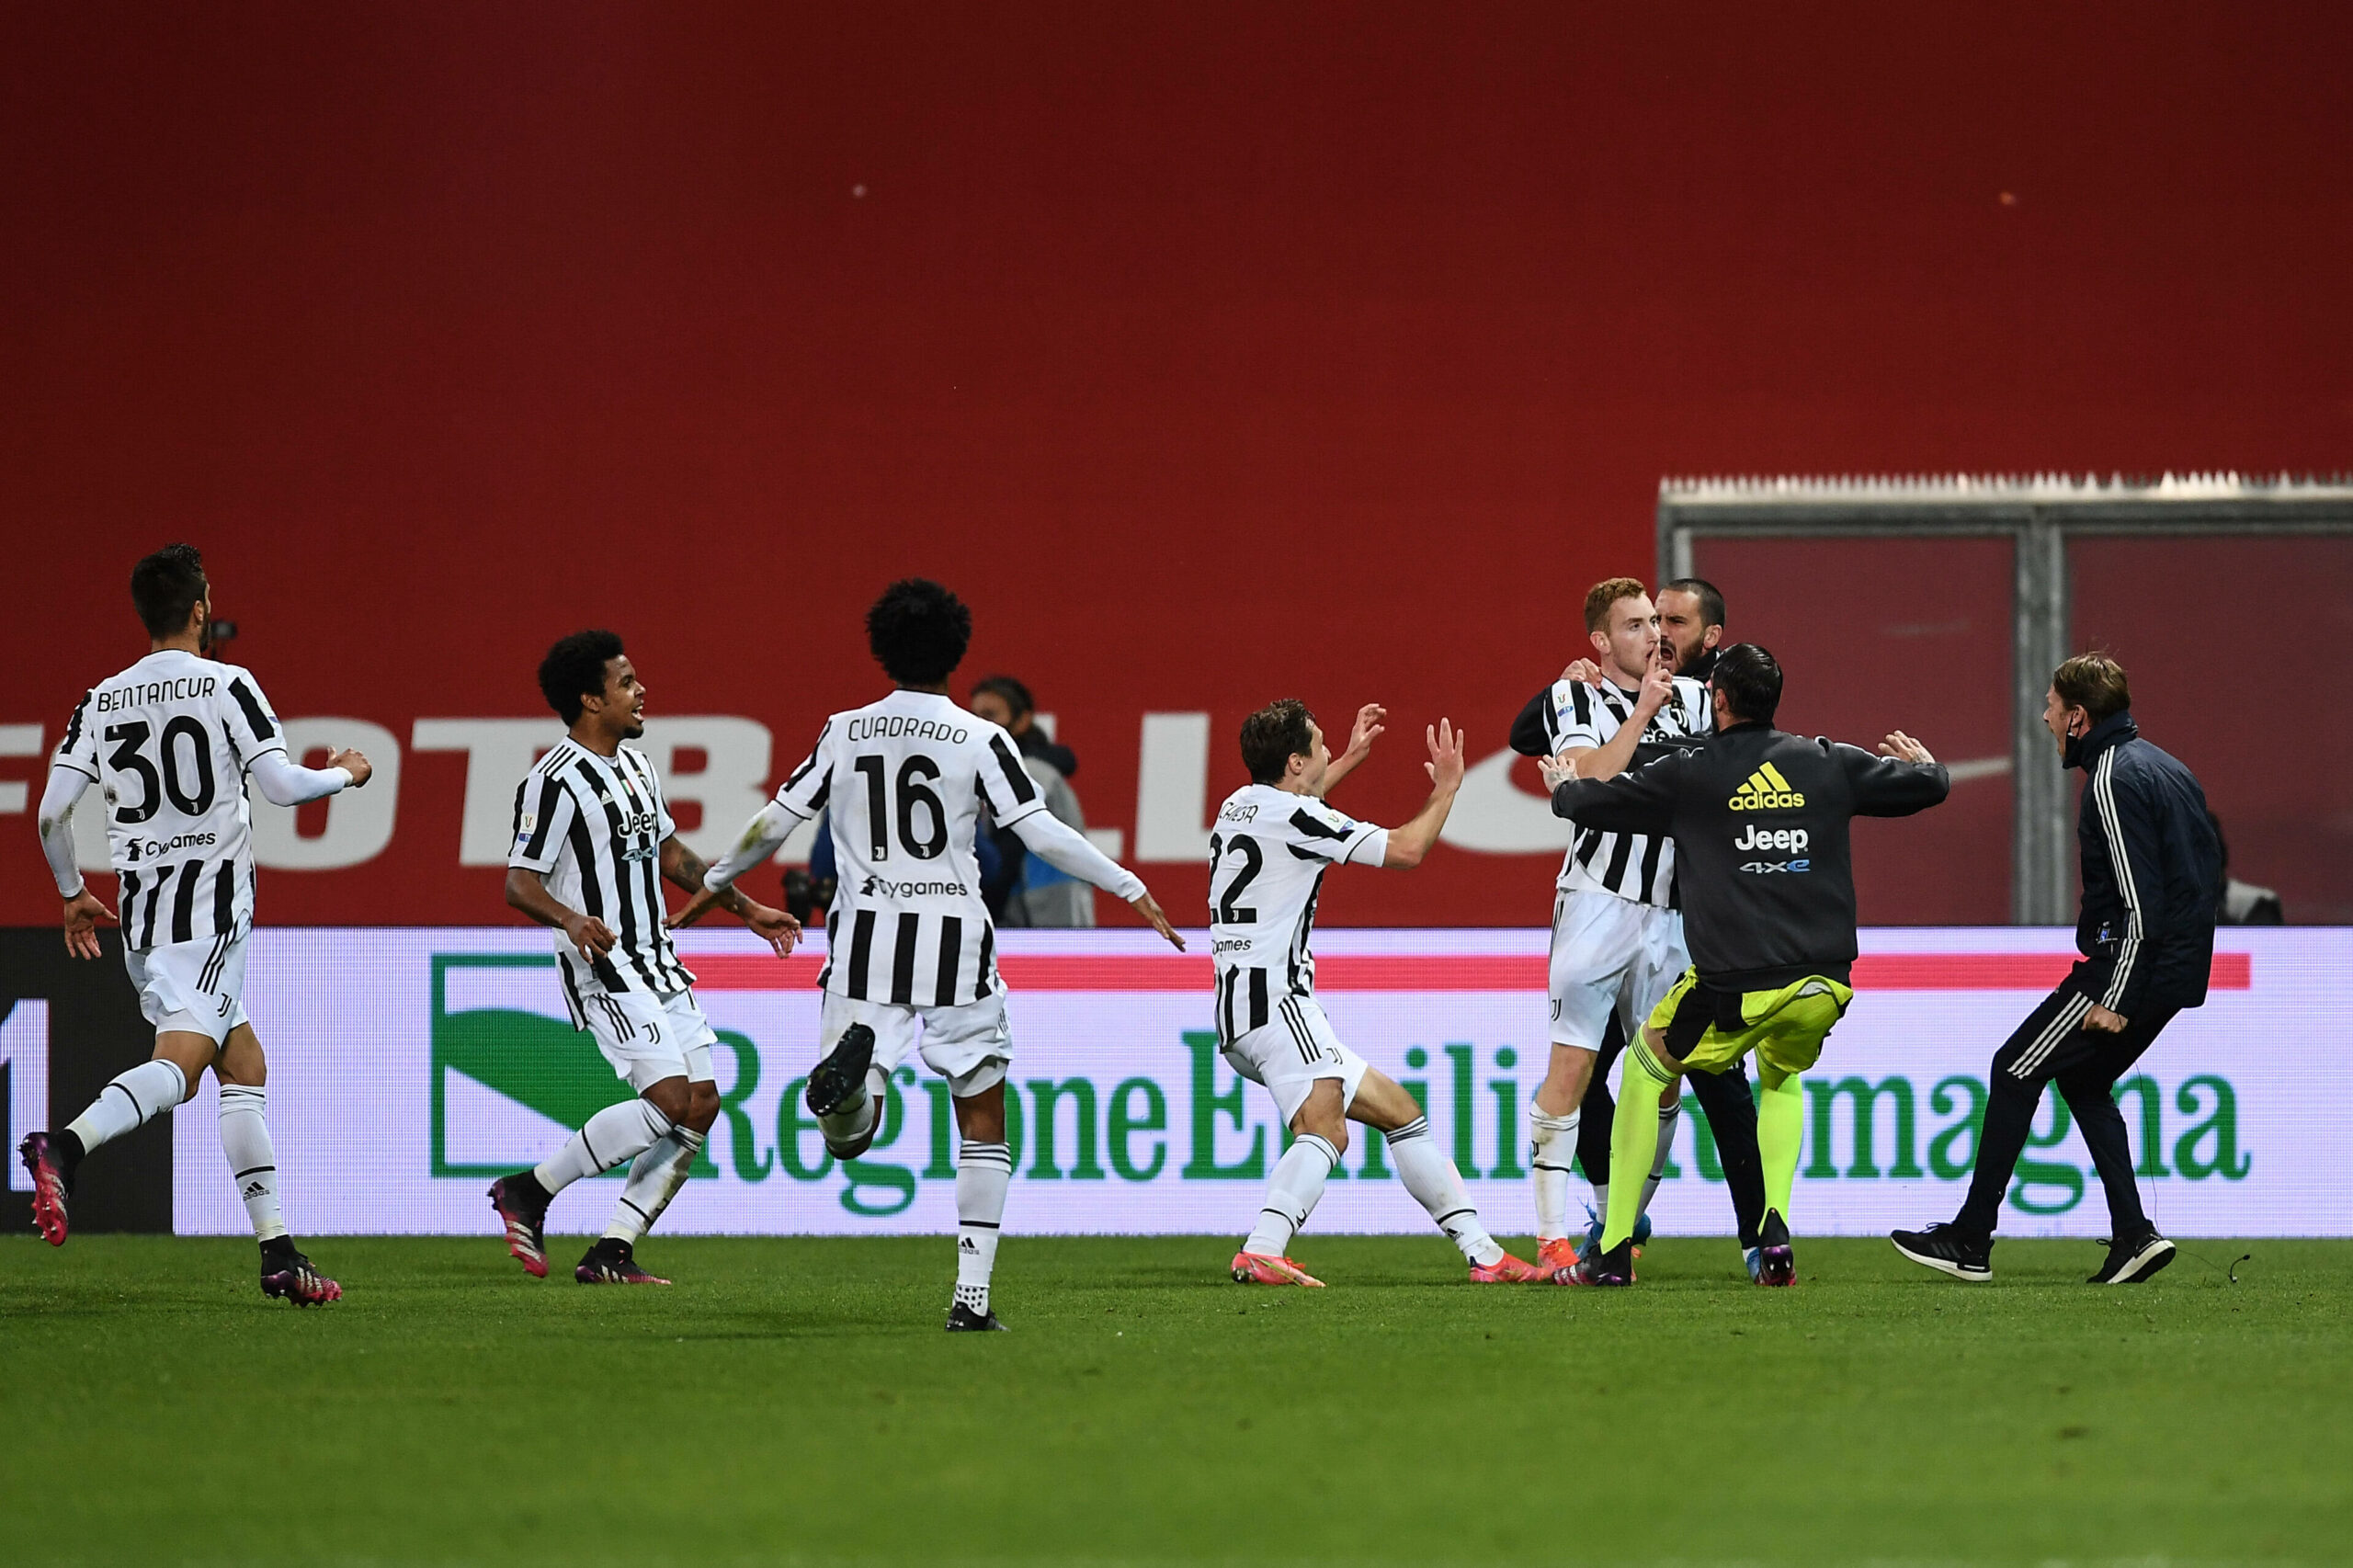 Titel für Pirlo: Juventus schlägt Atalanta und gewinnt die Coppa Italia!